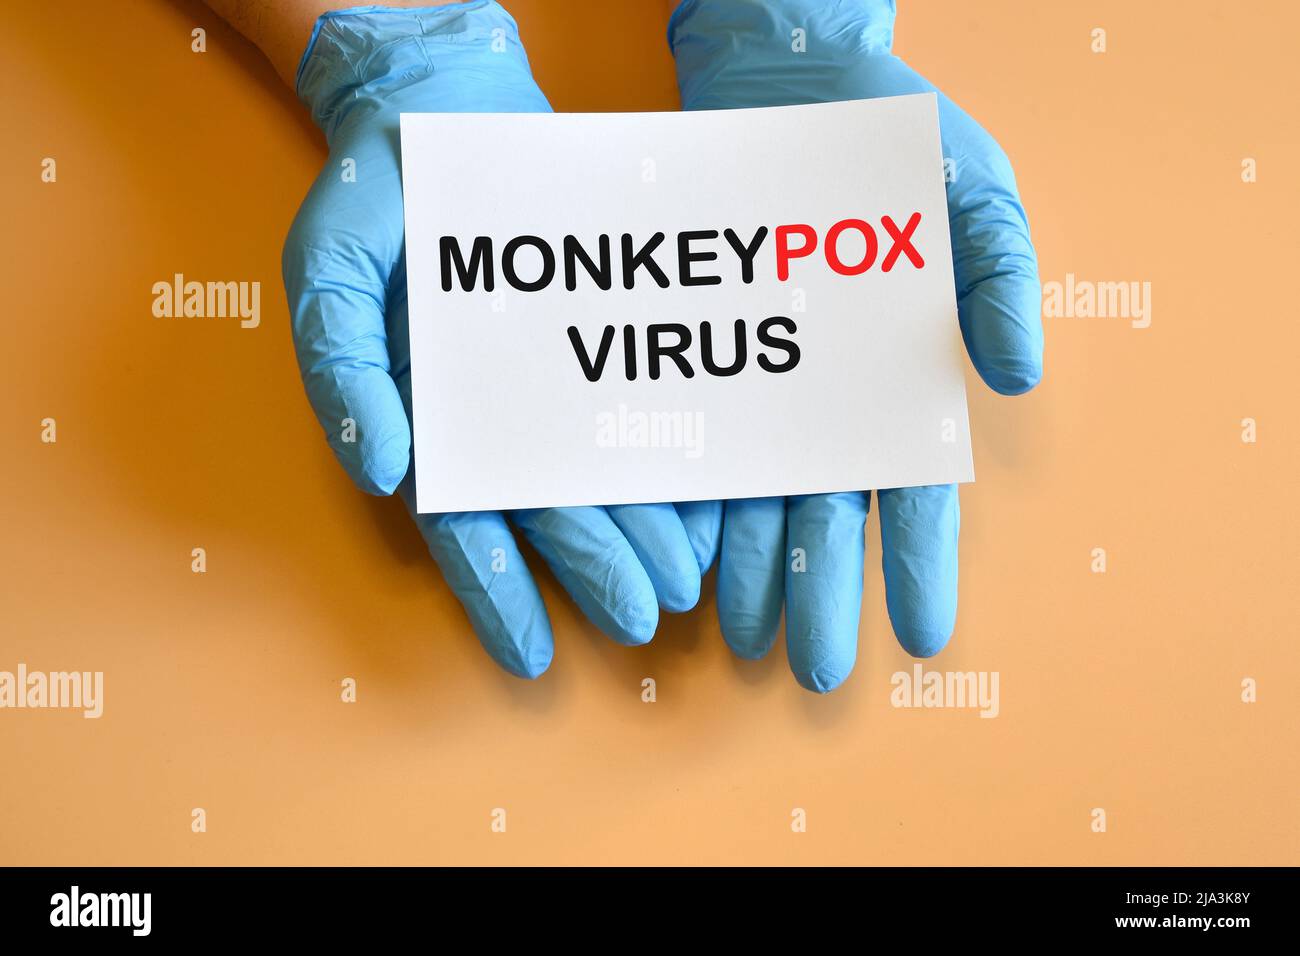 Monkeypox-Virus. Die Hände des Arztes in blauen Handschuhen halten ein weißes Papier mit der Aufschrift „Monkeypox Virus“. Stockfoto